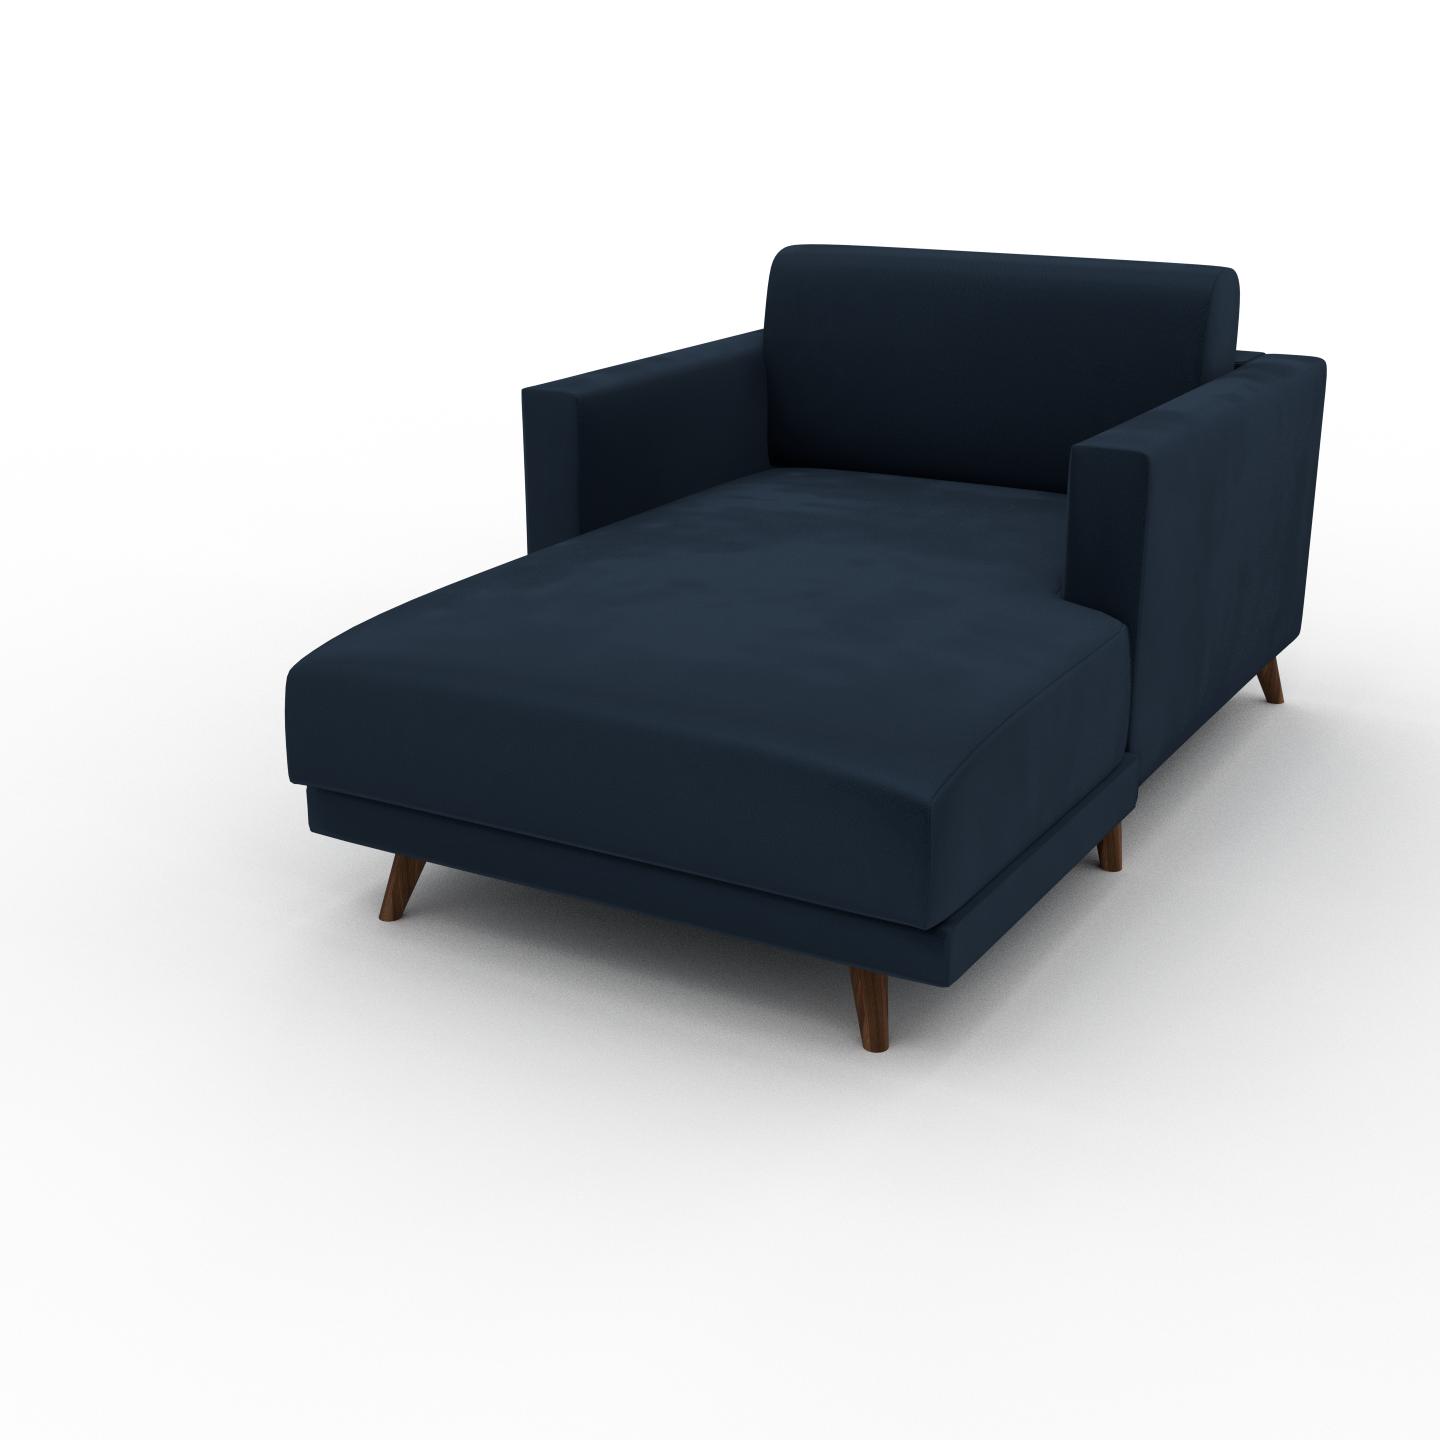 MYCS Relaxsessel Samt Nachtblau - Eleganter Relaxsessel: Hochwertige Qualität, einzigartiges Design - 105 x 75 x 162 cm, Individuell konfigurierbar